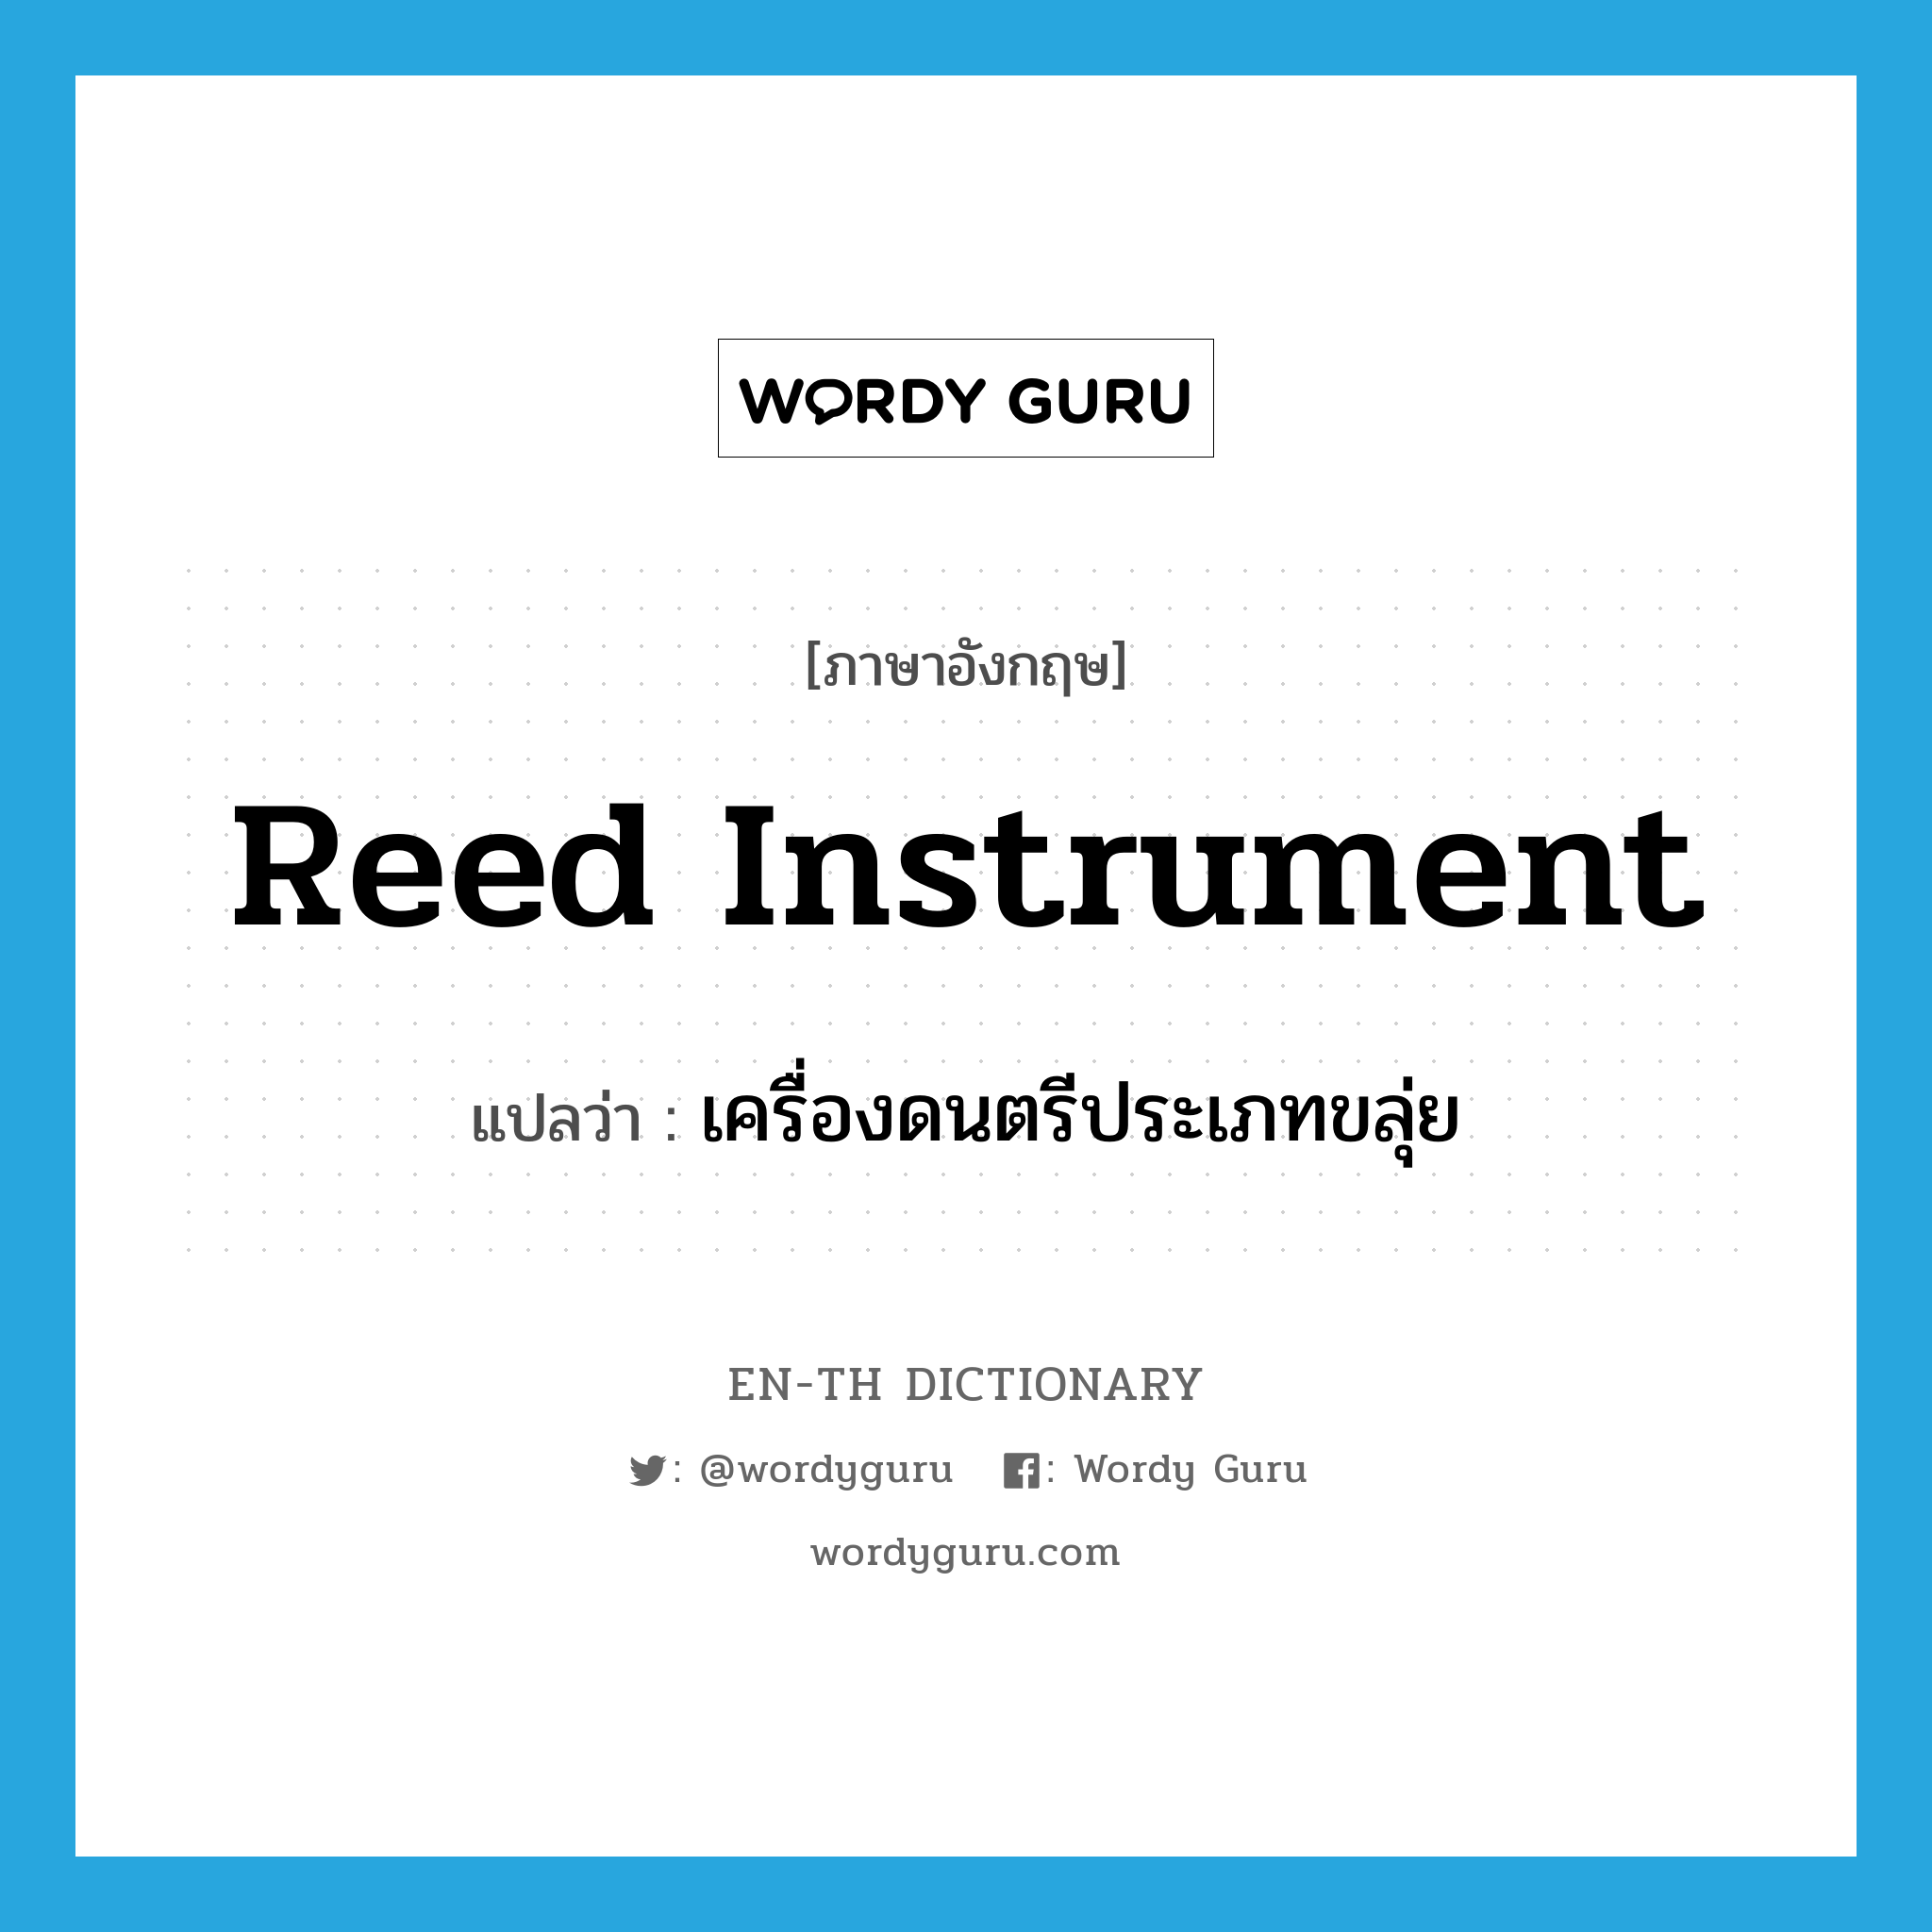 เครื่องดนตรีประเภทขลุ่ย ภาษาอังกฤษ?, คำศัพท์ภาษาอังกฤษ เครื่องดนตรีประเภทขลุ่ย แปลว่า reed instrument ประเภท N หมวด N